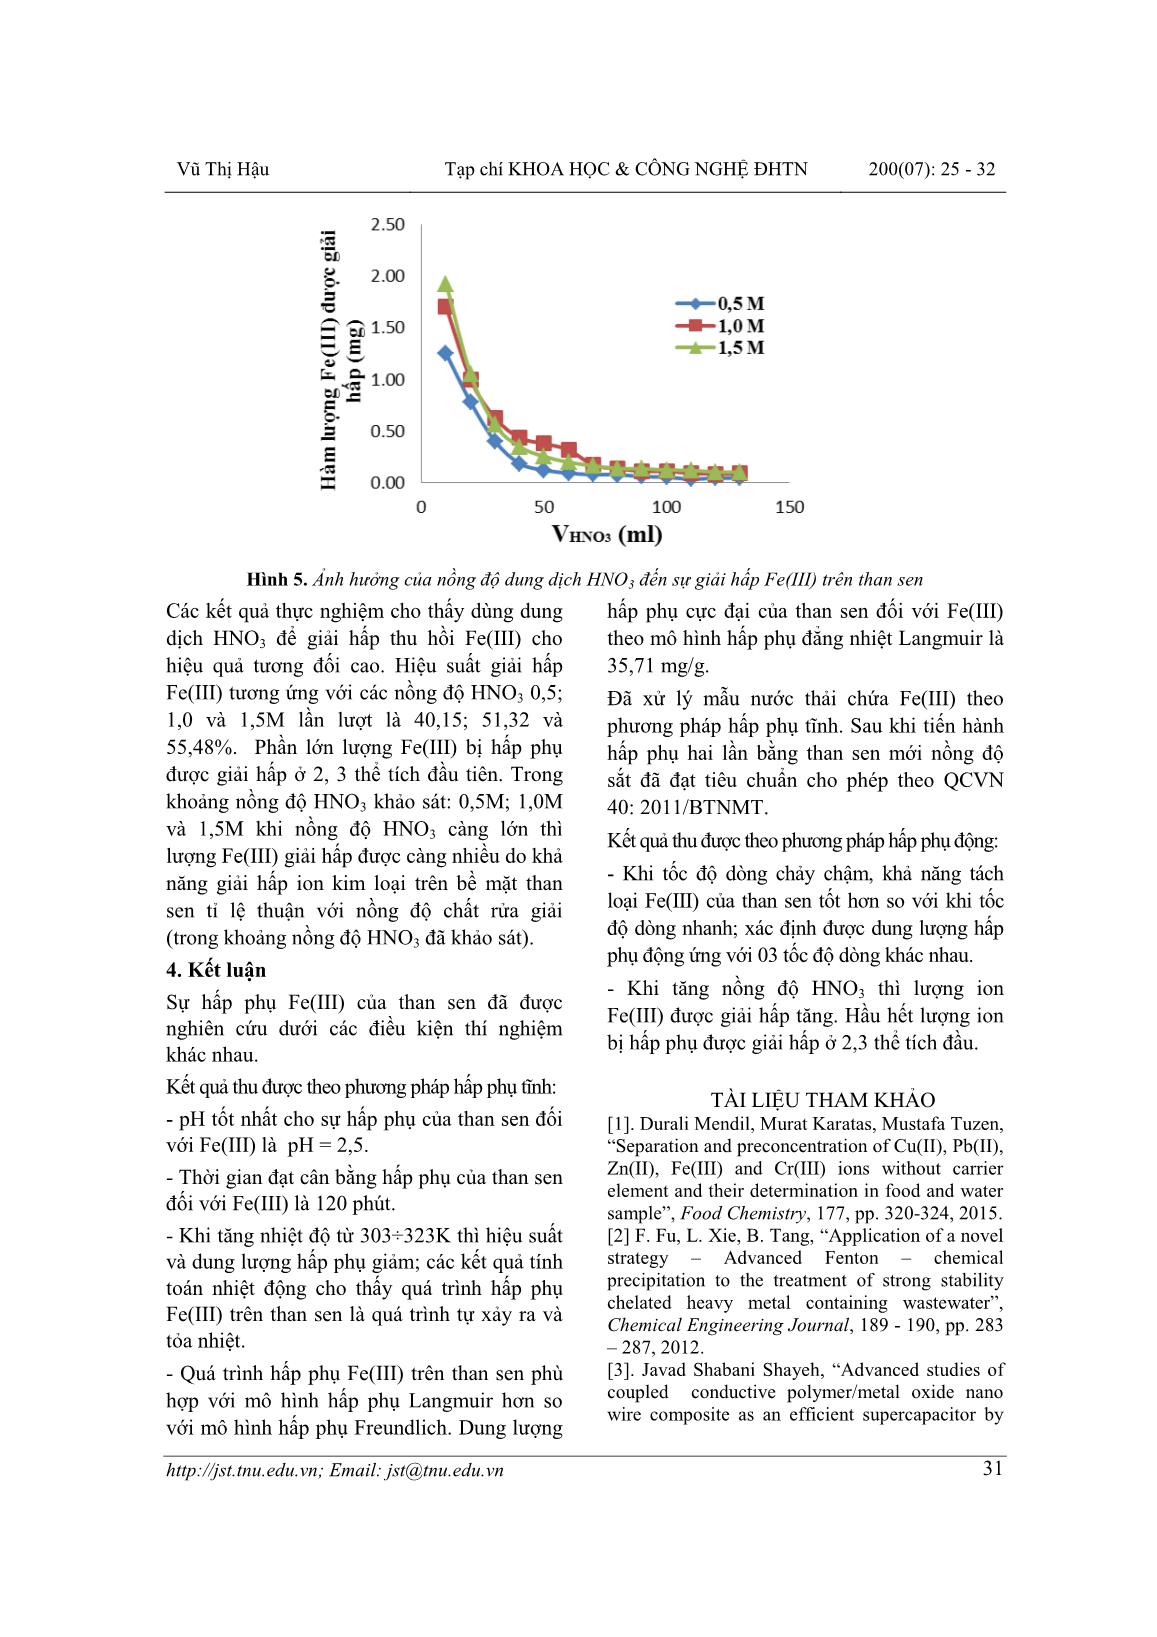 Nghiên cứu khả năng hấp phụ Fe(III) của than chế tạo từ cây sen hoạt hóa bằng Axit Sunfuric trang 7